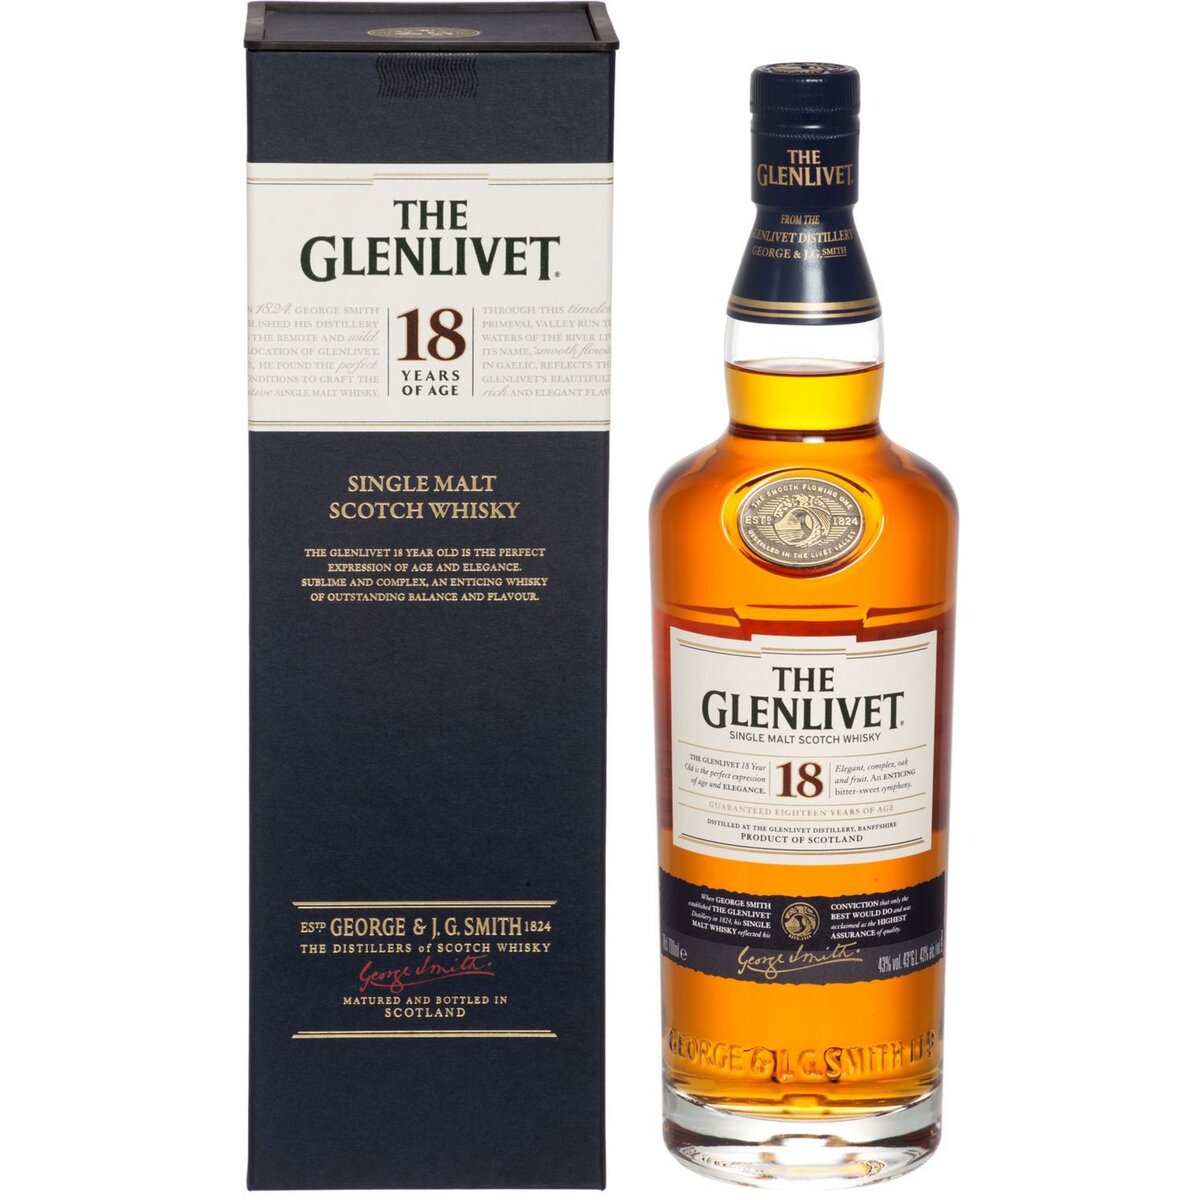 THE GLENLIVET Scotch whisky single malt écossais 43% 18 ans avec étui 70cl